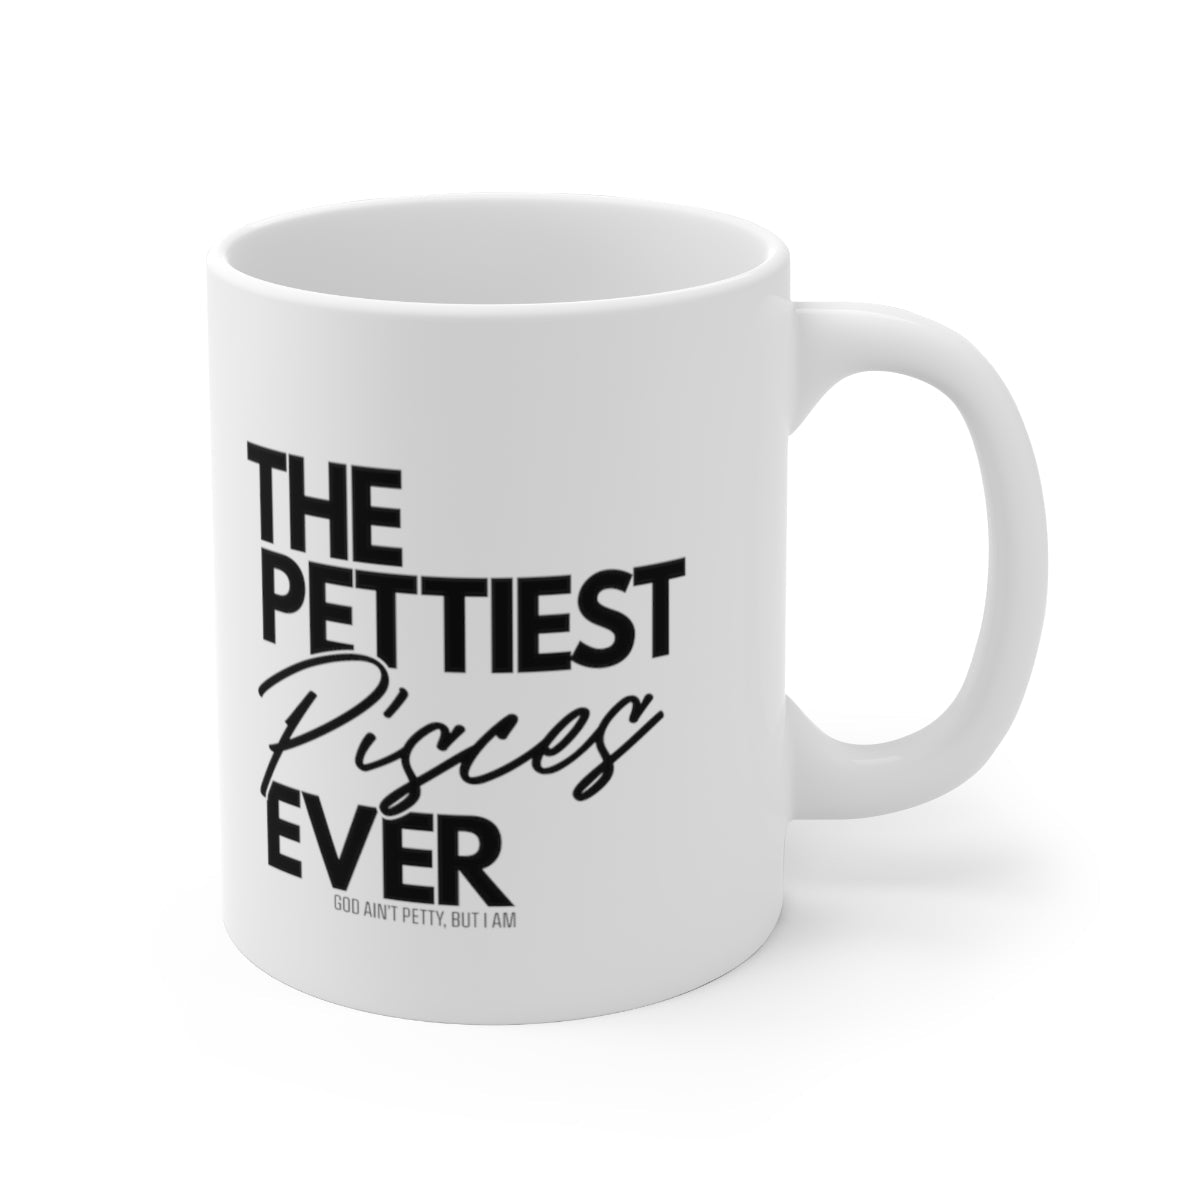 The Pettiest Pisces Ever Mug 11oz (White/Black)-Mug-The Original God Ain't Petty But I Am